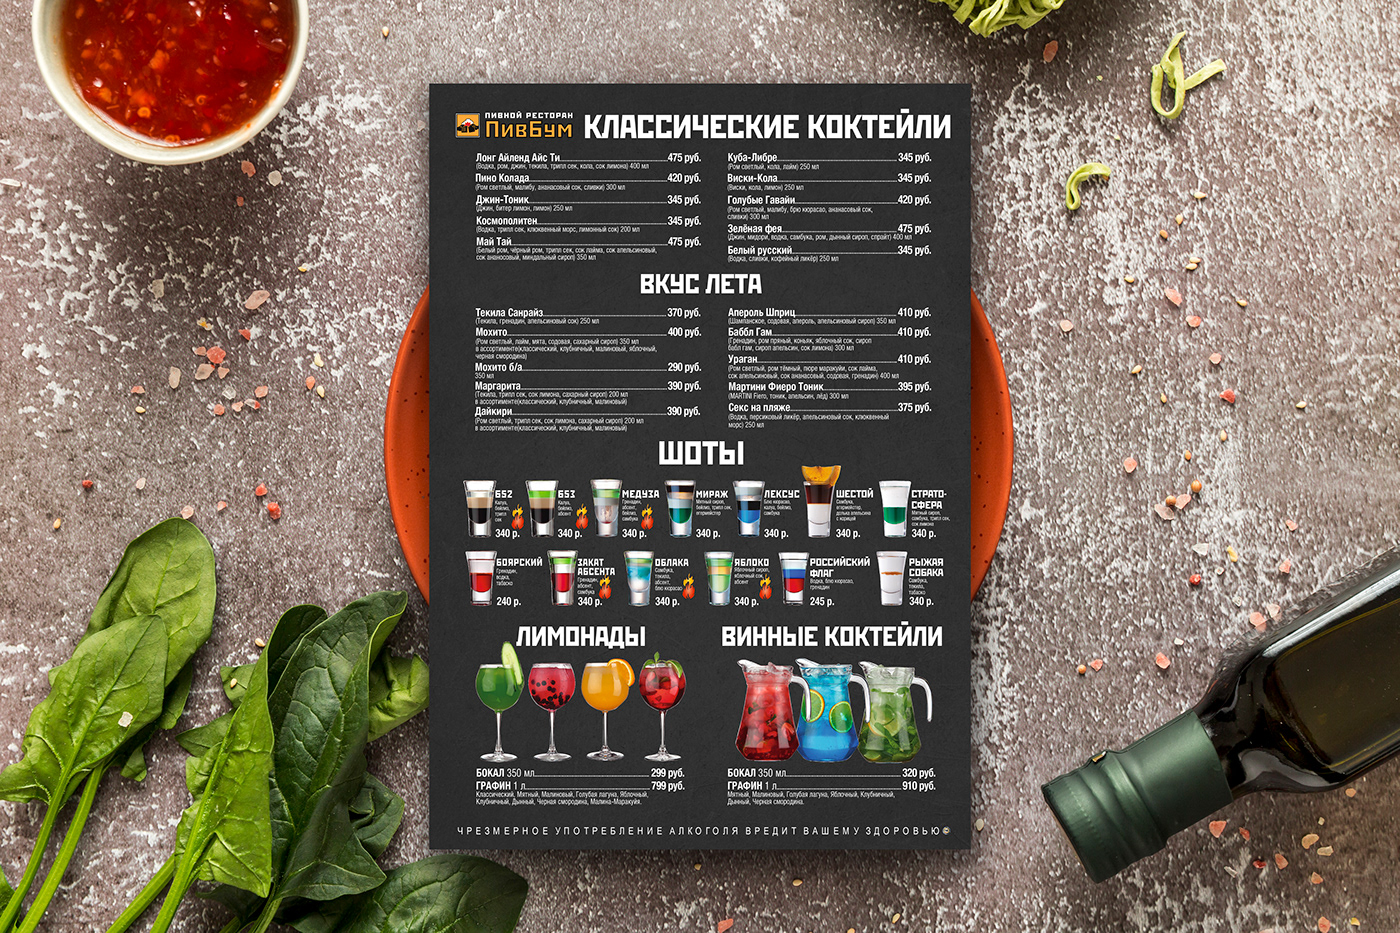 меню menu restaurant design graphic design  дизайн ресторан кафе Food  еда